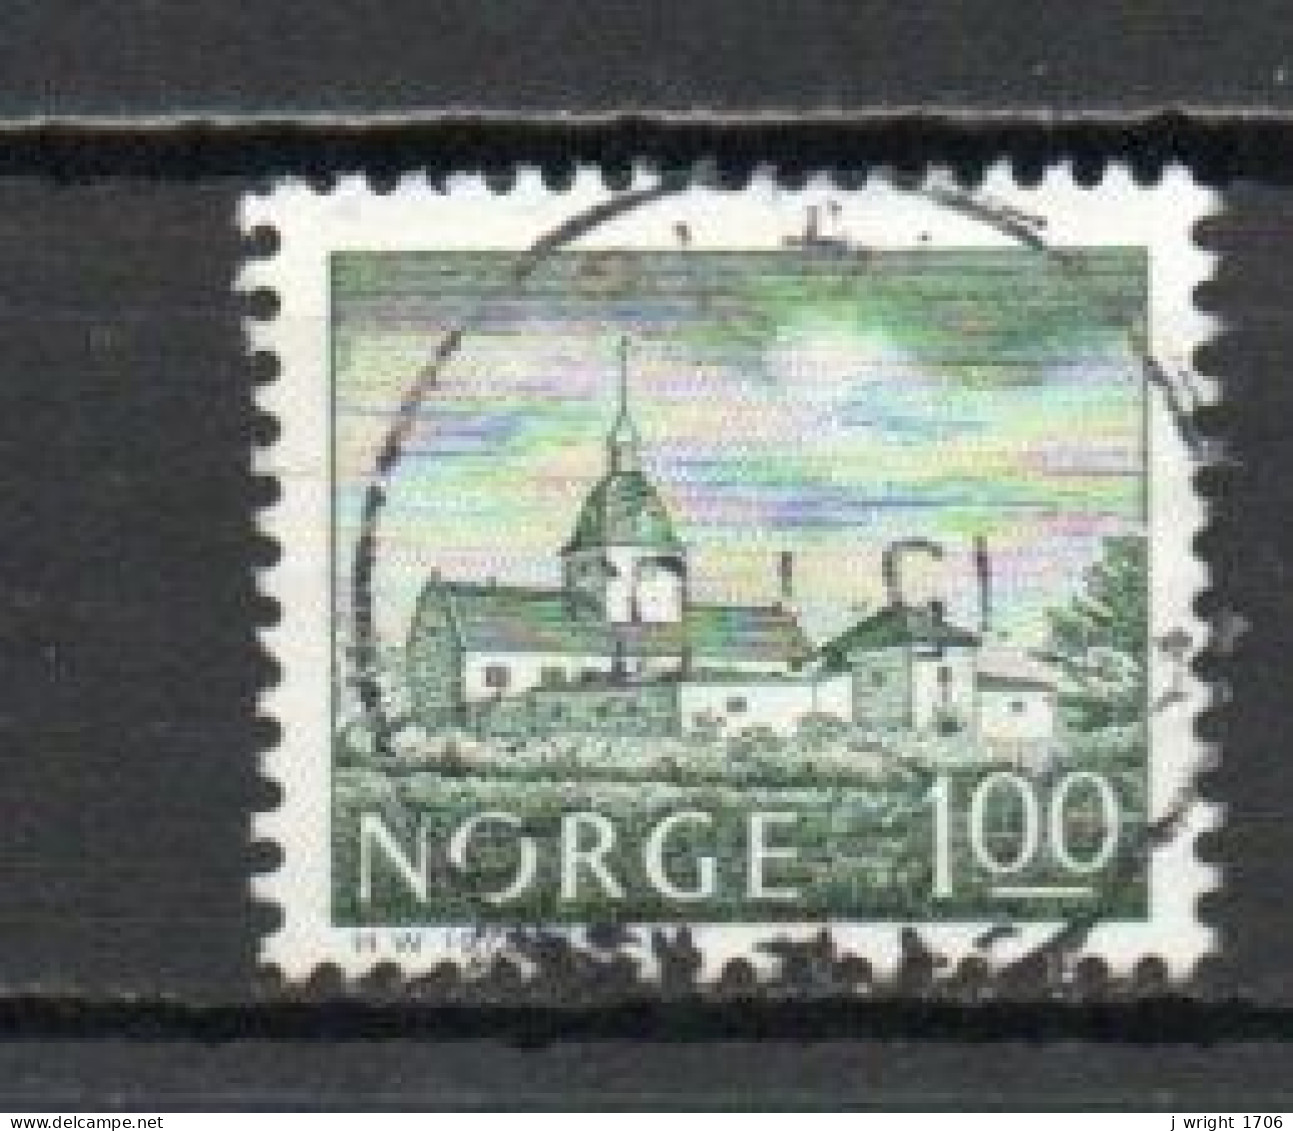 Norway, 1978, Buildings/Austråt Manor, 1Kr, USED - Used Stamps